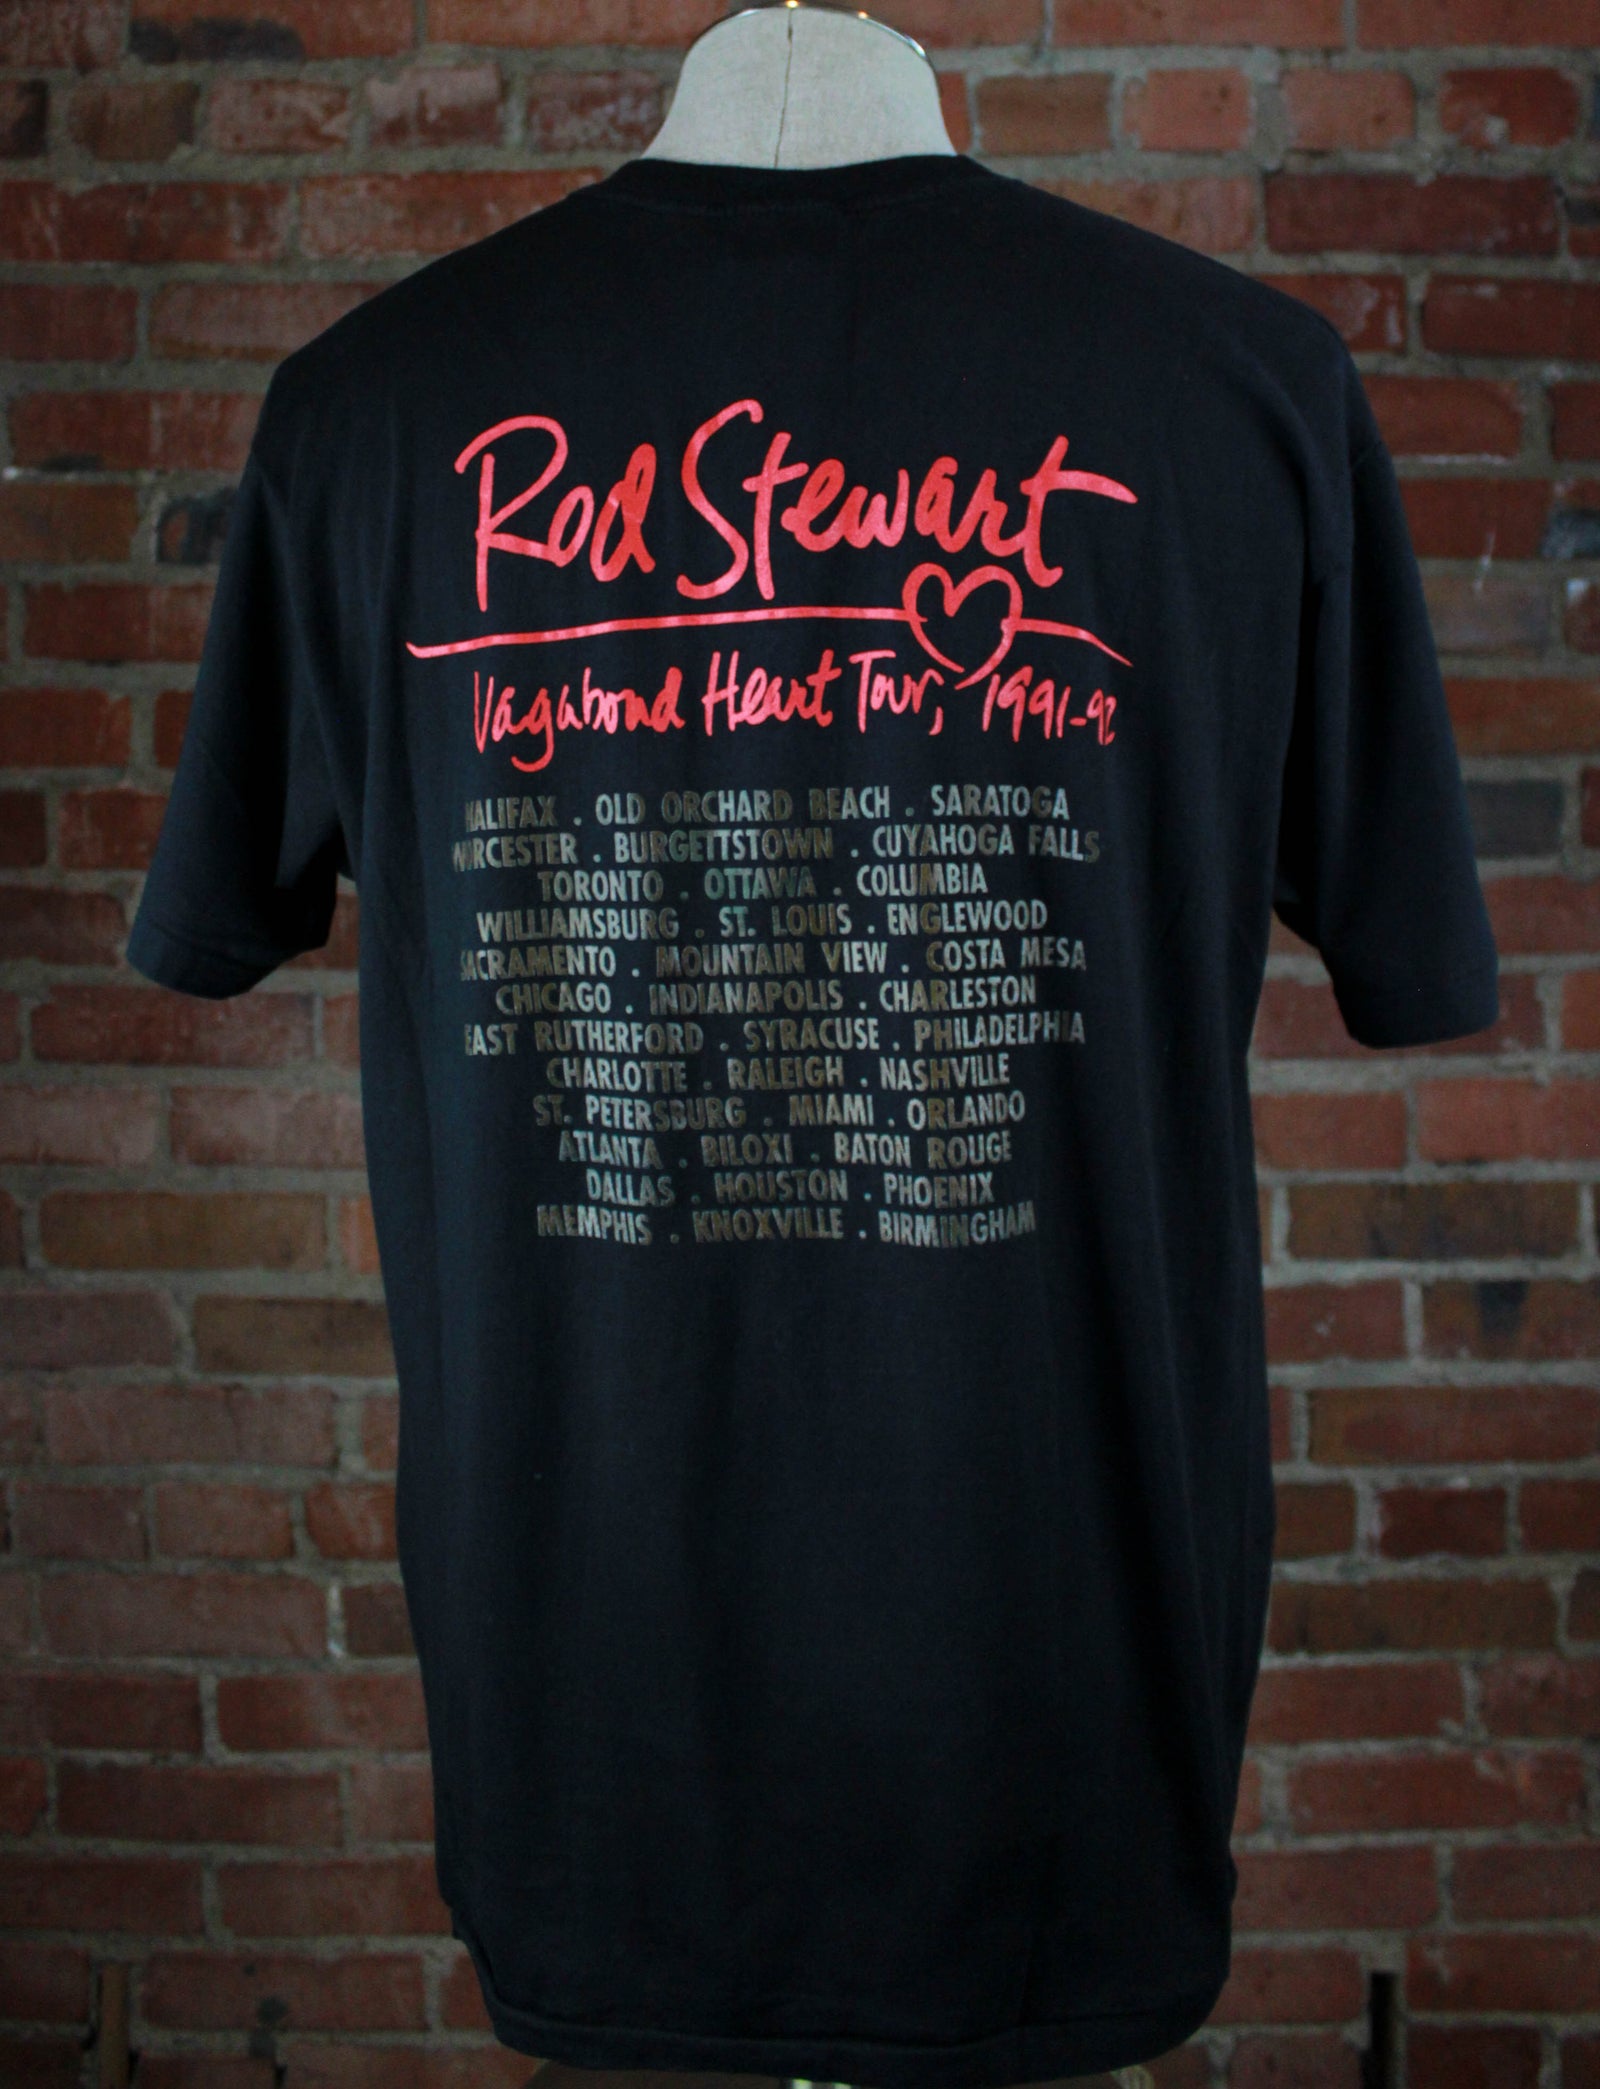 Vintage 1991 Rod Stewart Concert T Shirt Vagabond Heart Tour Black Unisex Large